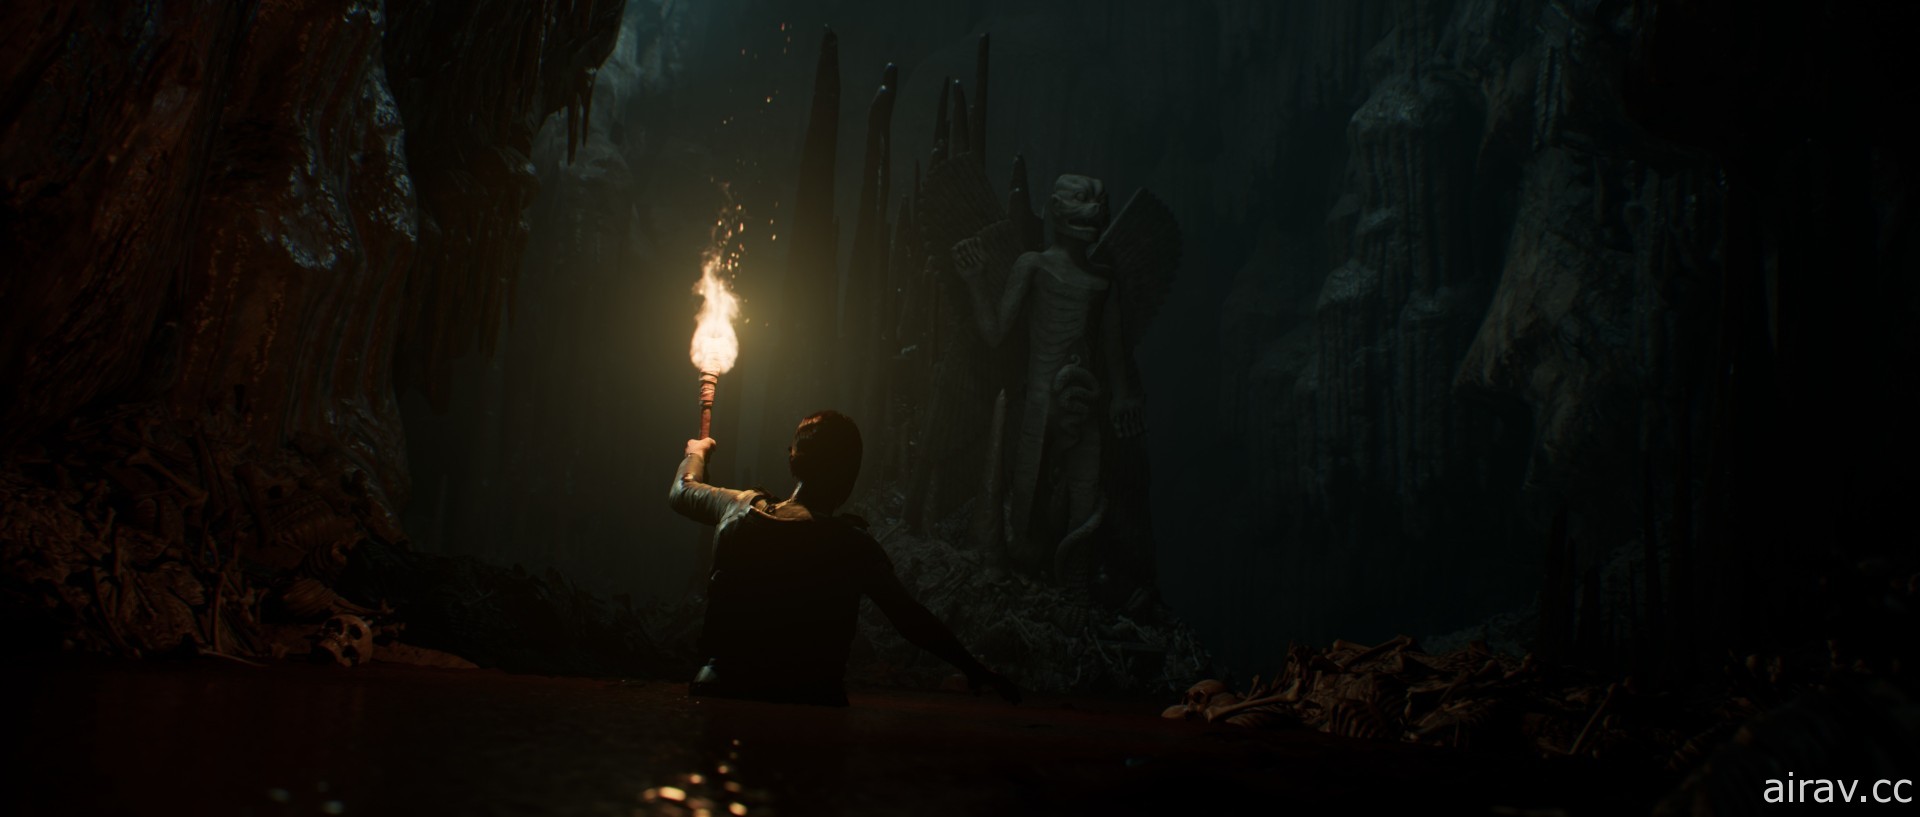 恐怖惊悚系列《黑相集》第三弹作品《黑相集：灰冥界》中文版预定 2021 年发售